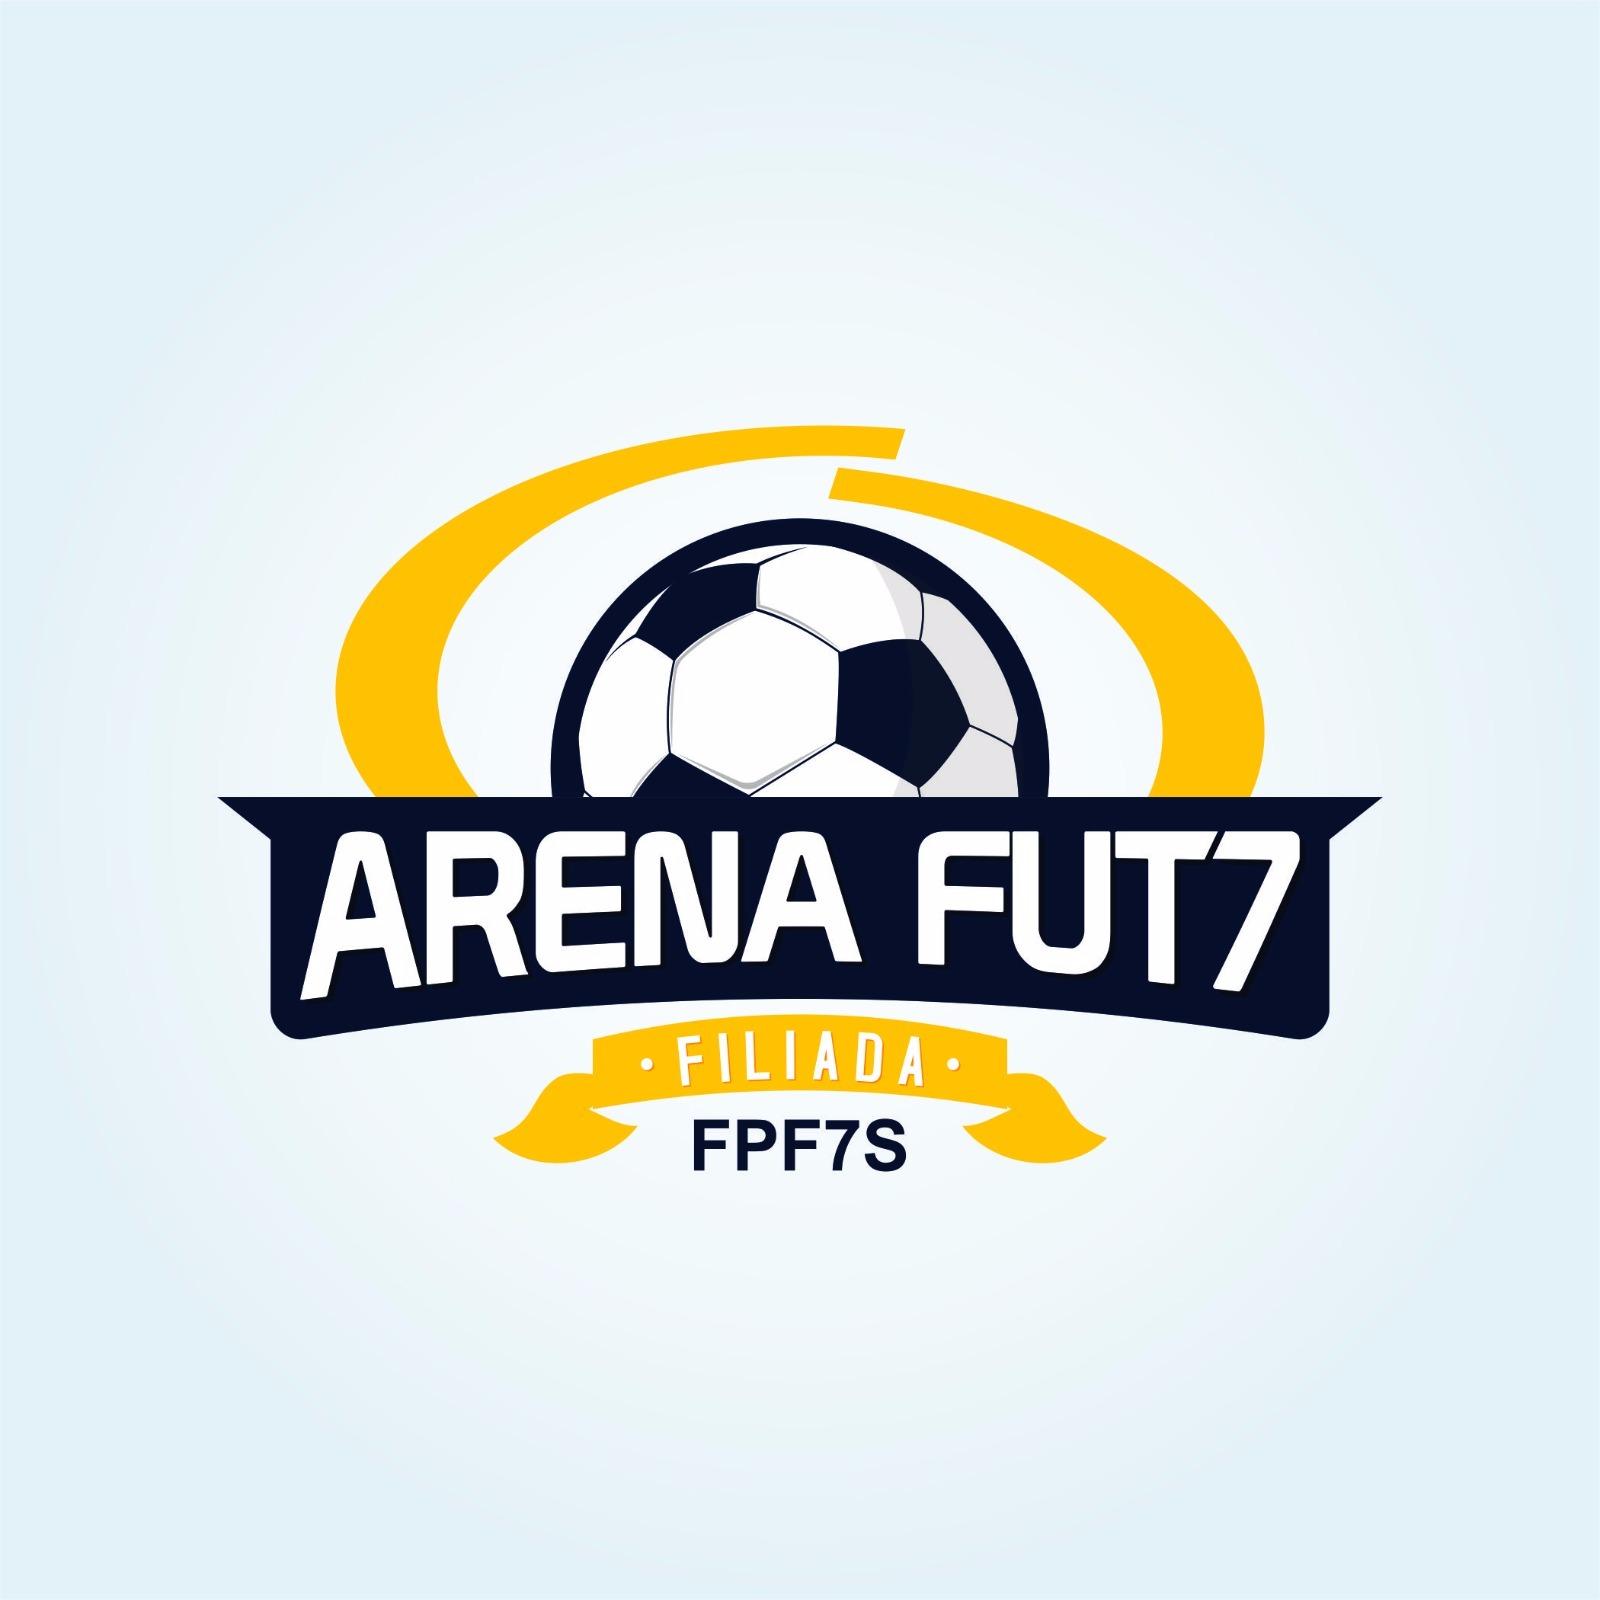 Arena Fut7